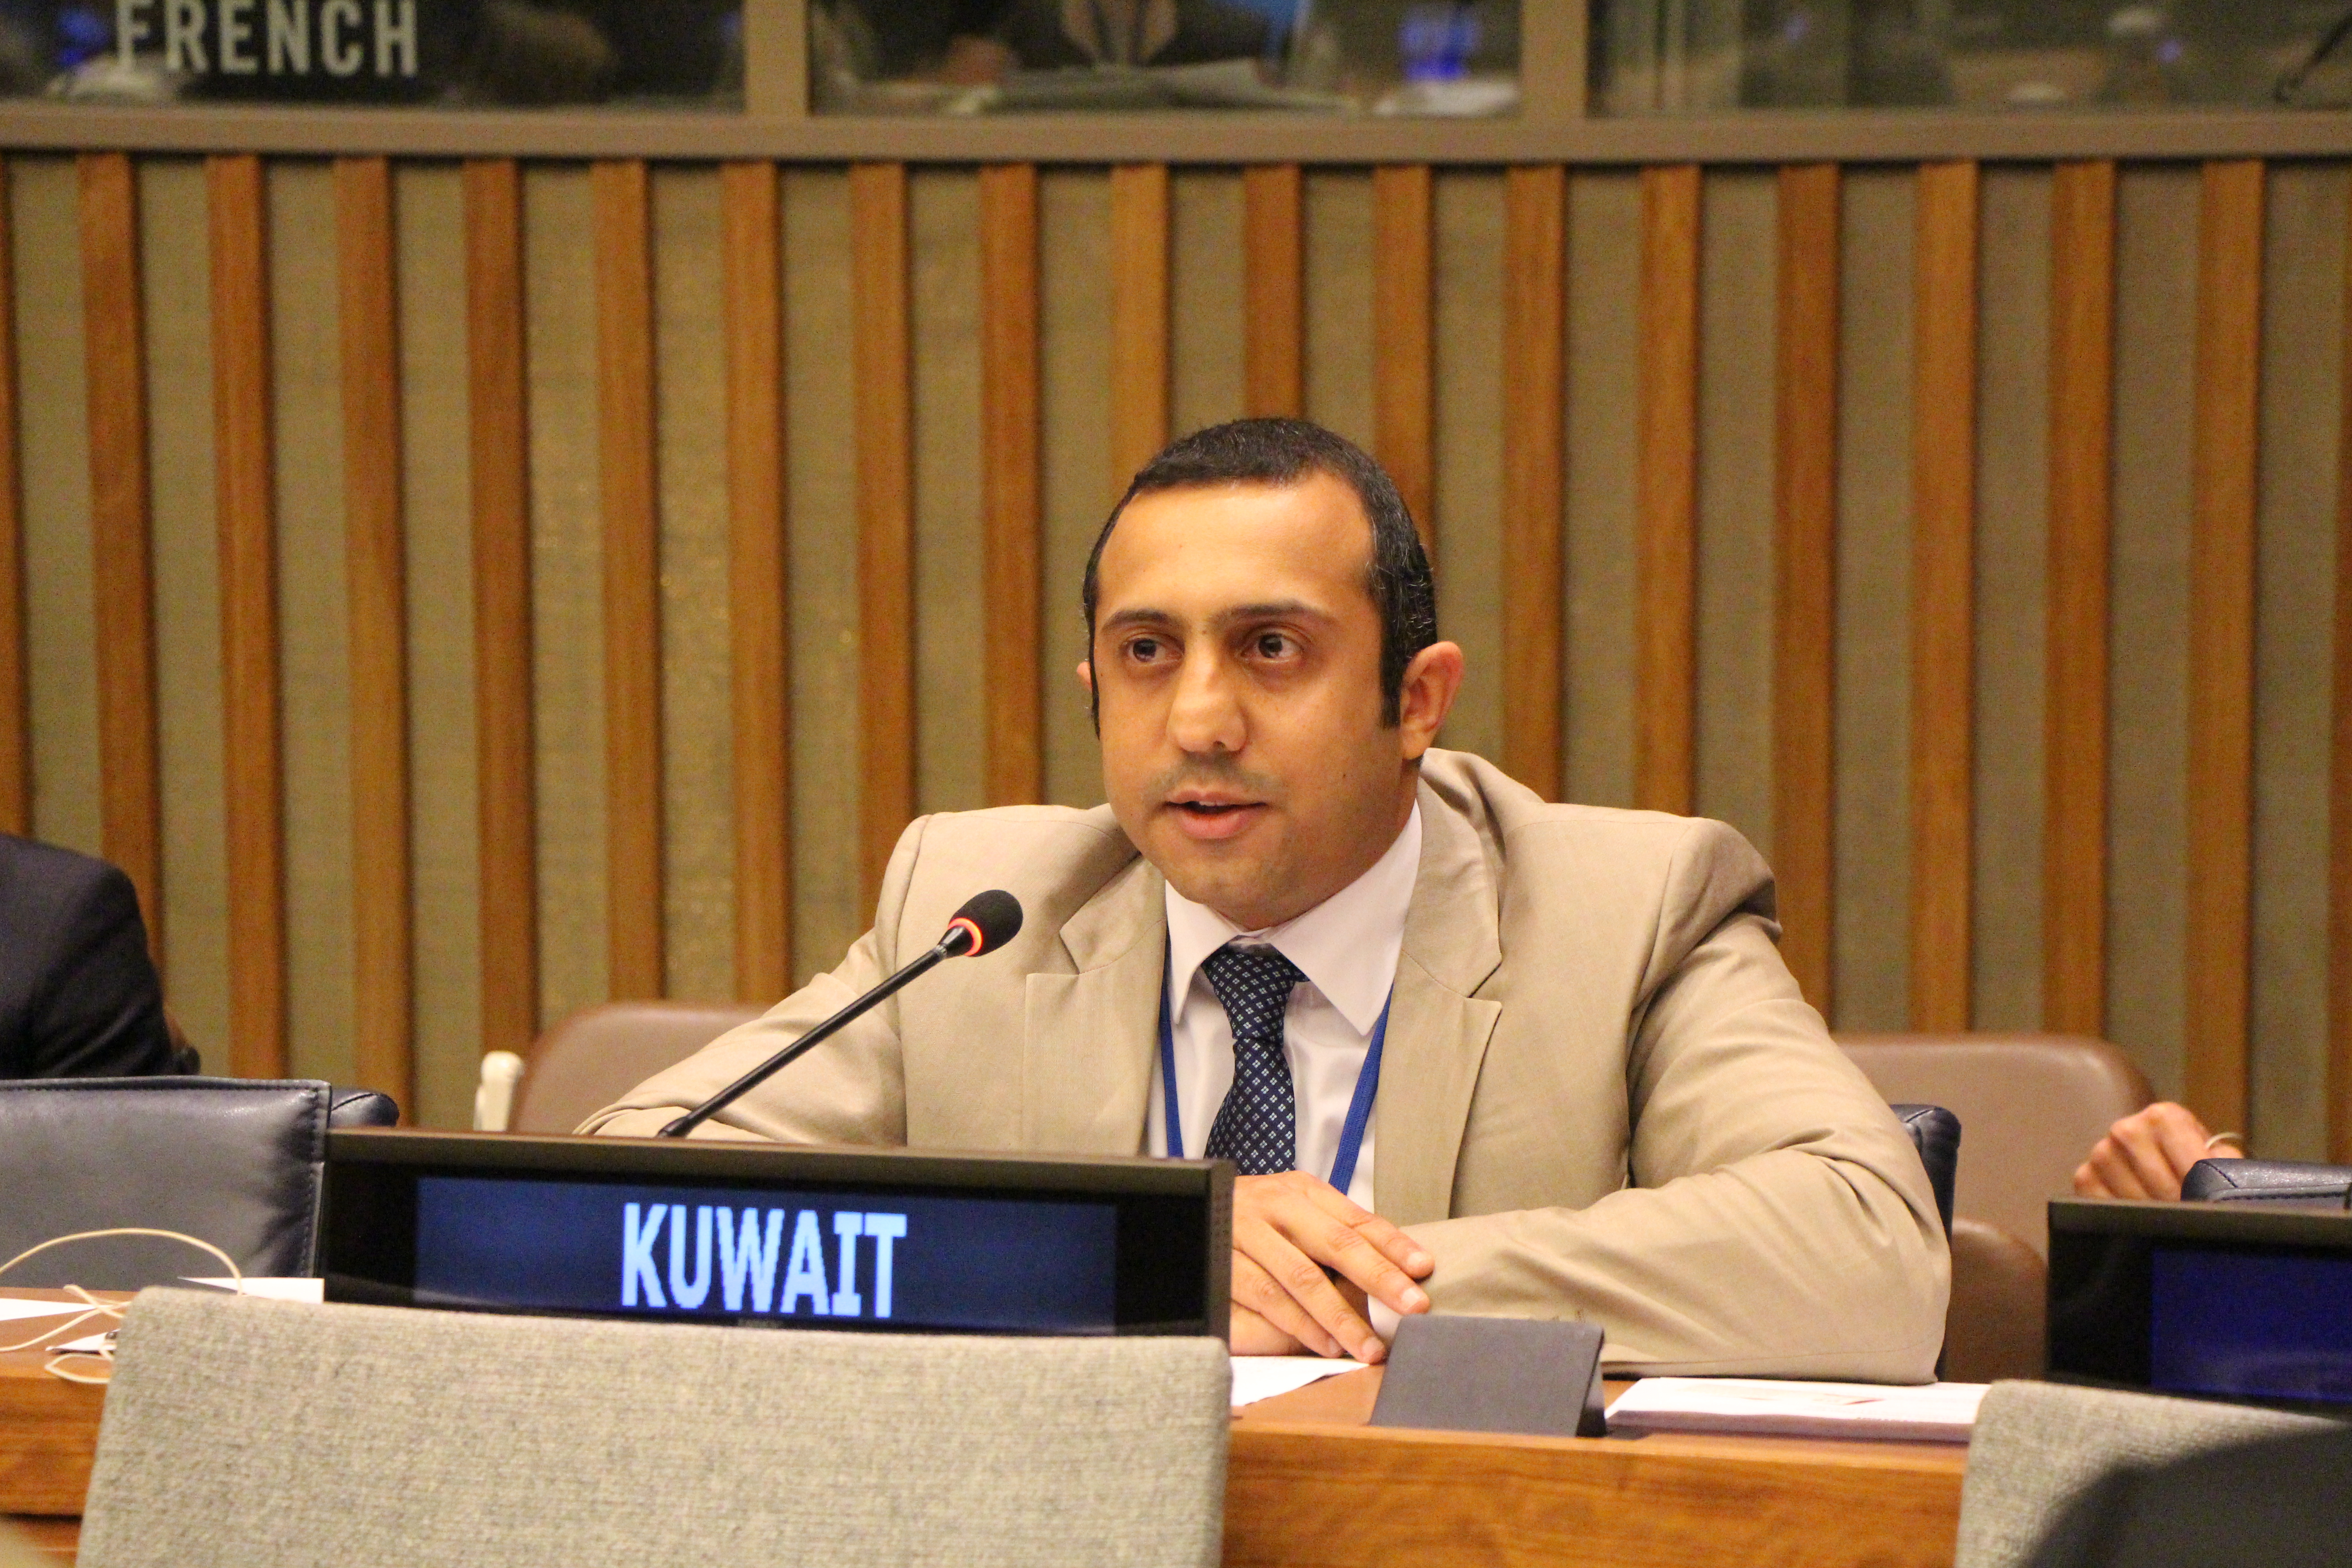  الكويت تؤكد مواقفها الدائمة والثابتة حول قضايا الأمن الدولي